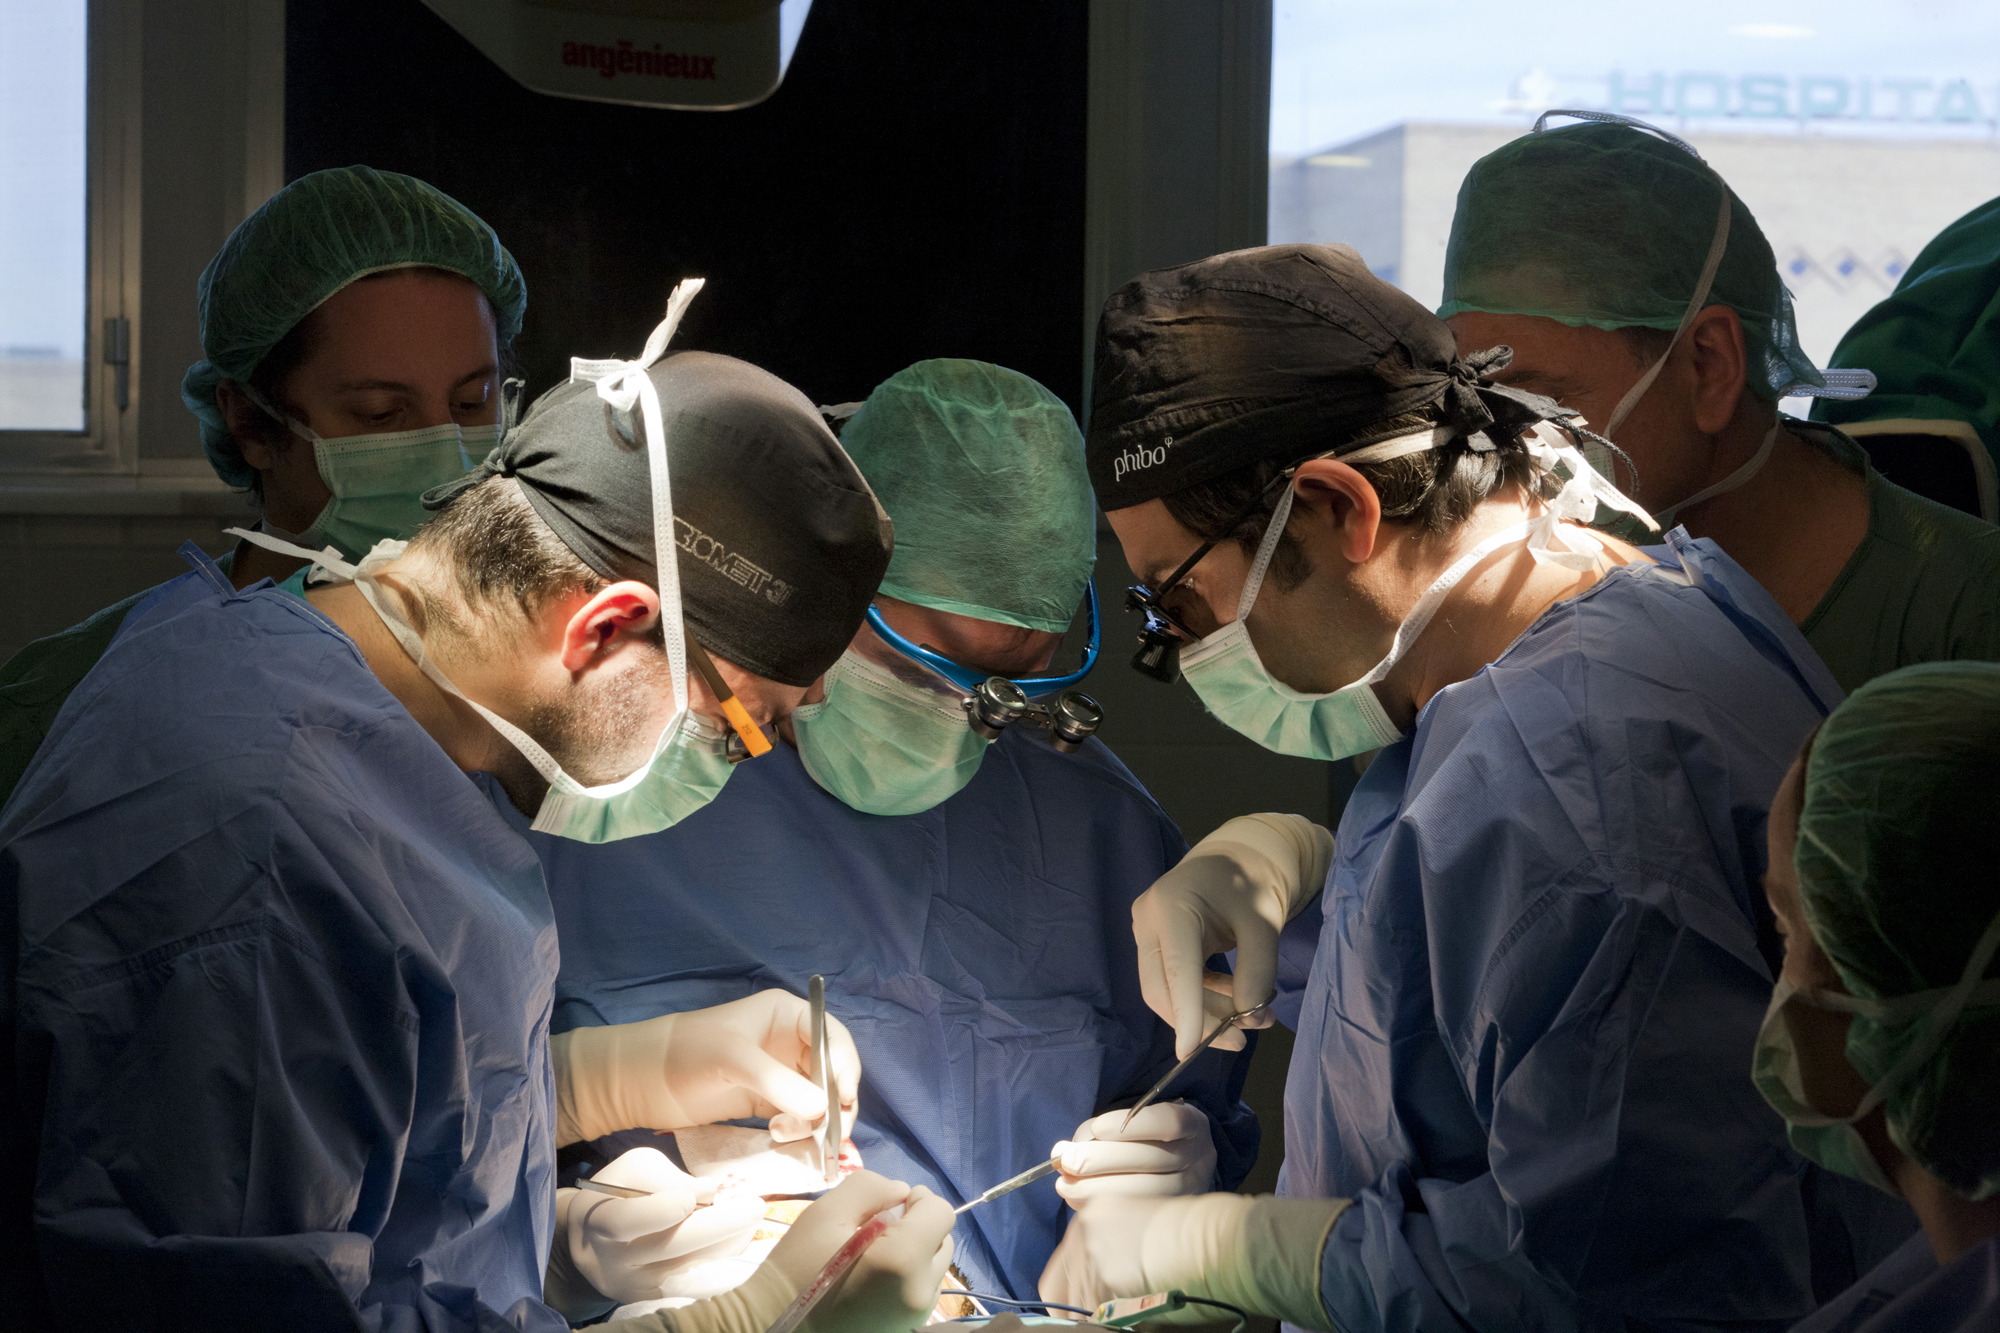 Cirujanos maxilofaciales, otorrinolaringólogos y cirujanos plásticos han participado en el equipo quirúrgico de esta intervención